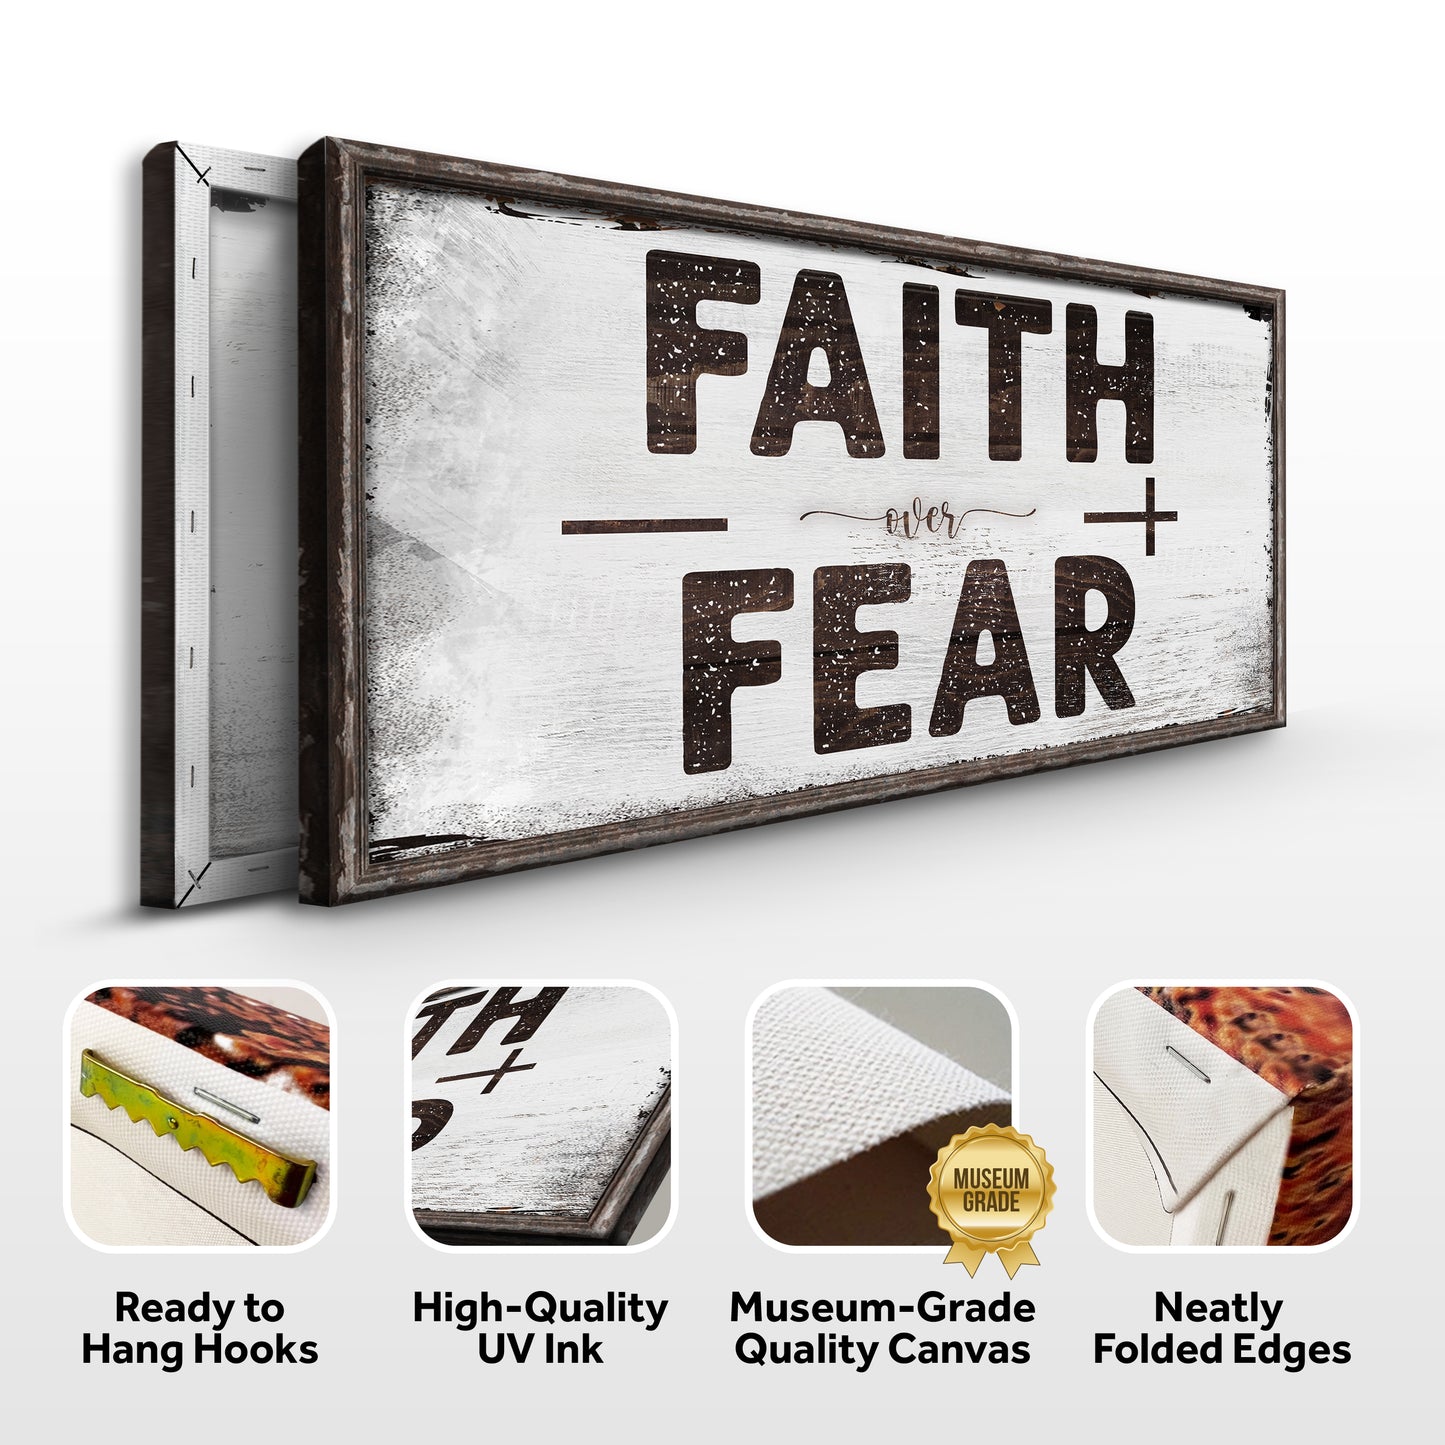 Faith Over Fear Sign